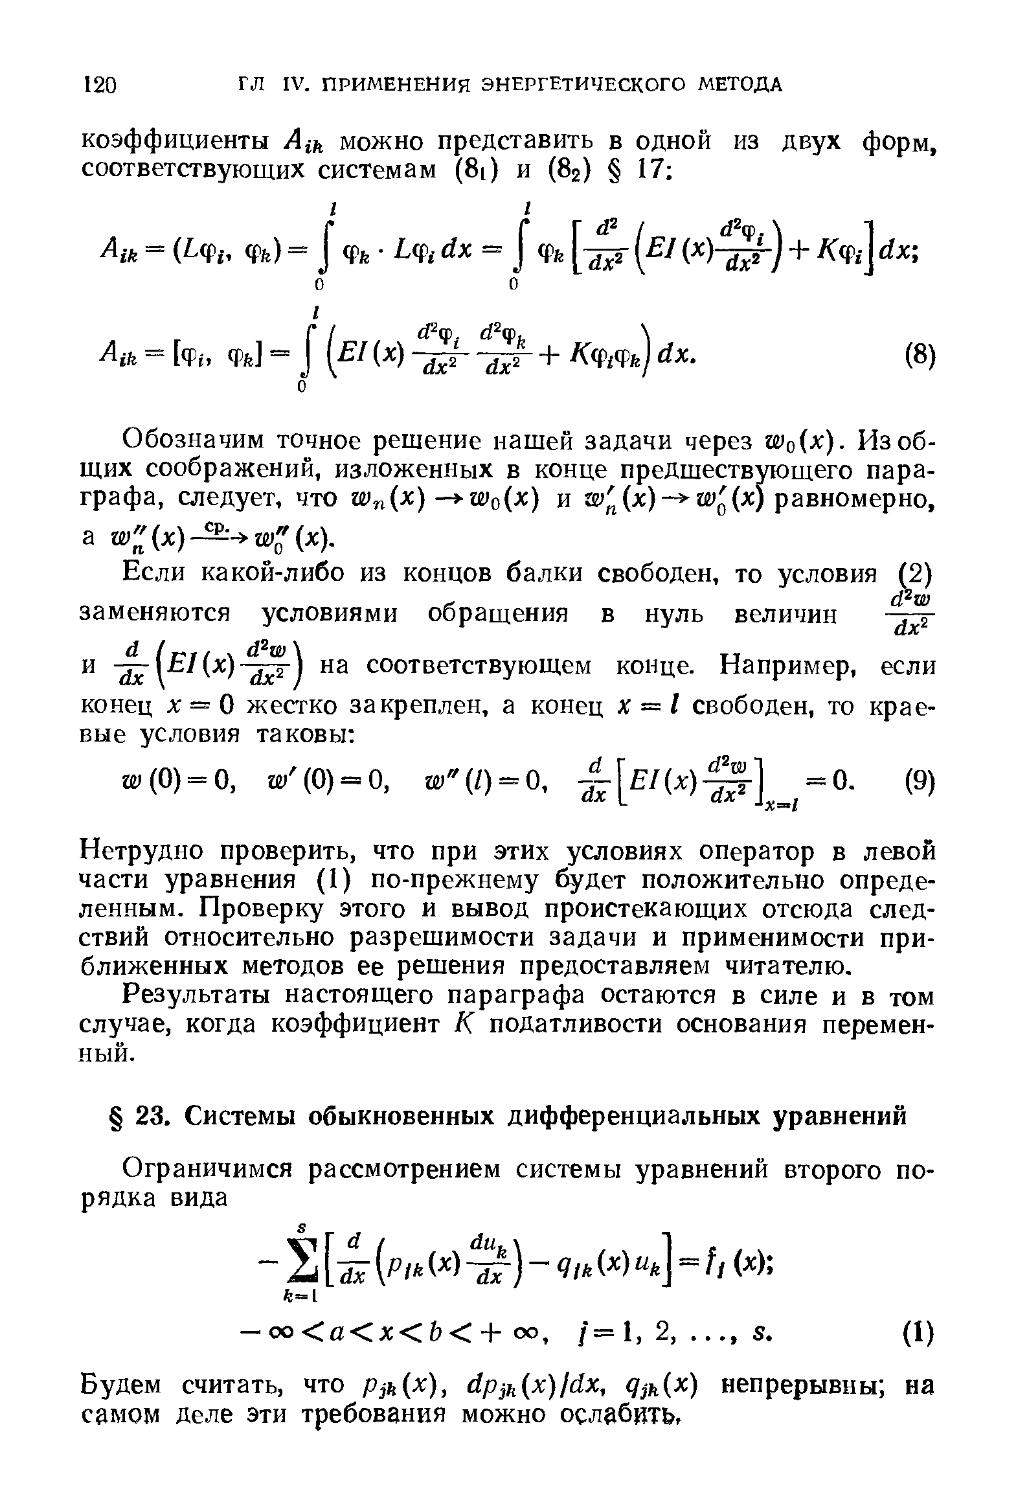 § 23. Системы обыкновенных дифференциальных уравнений